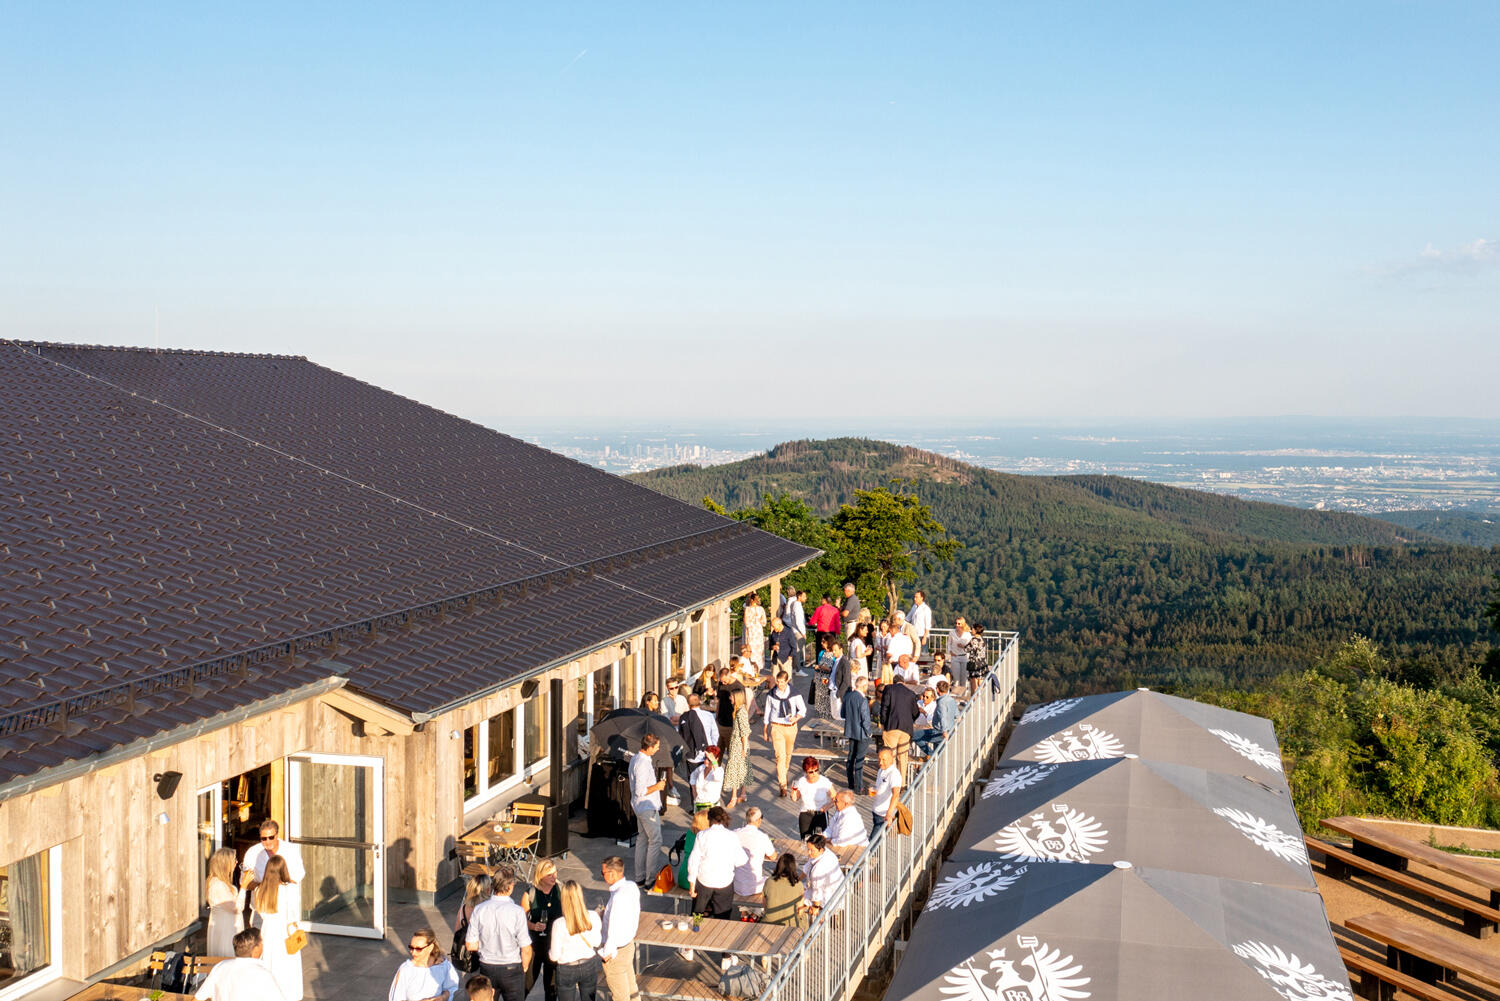 Restaurant mit großer Terrasse voller Leute auf einem Gipfel. Im Hintergrund blickt man aufs Tal